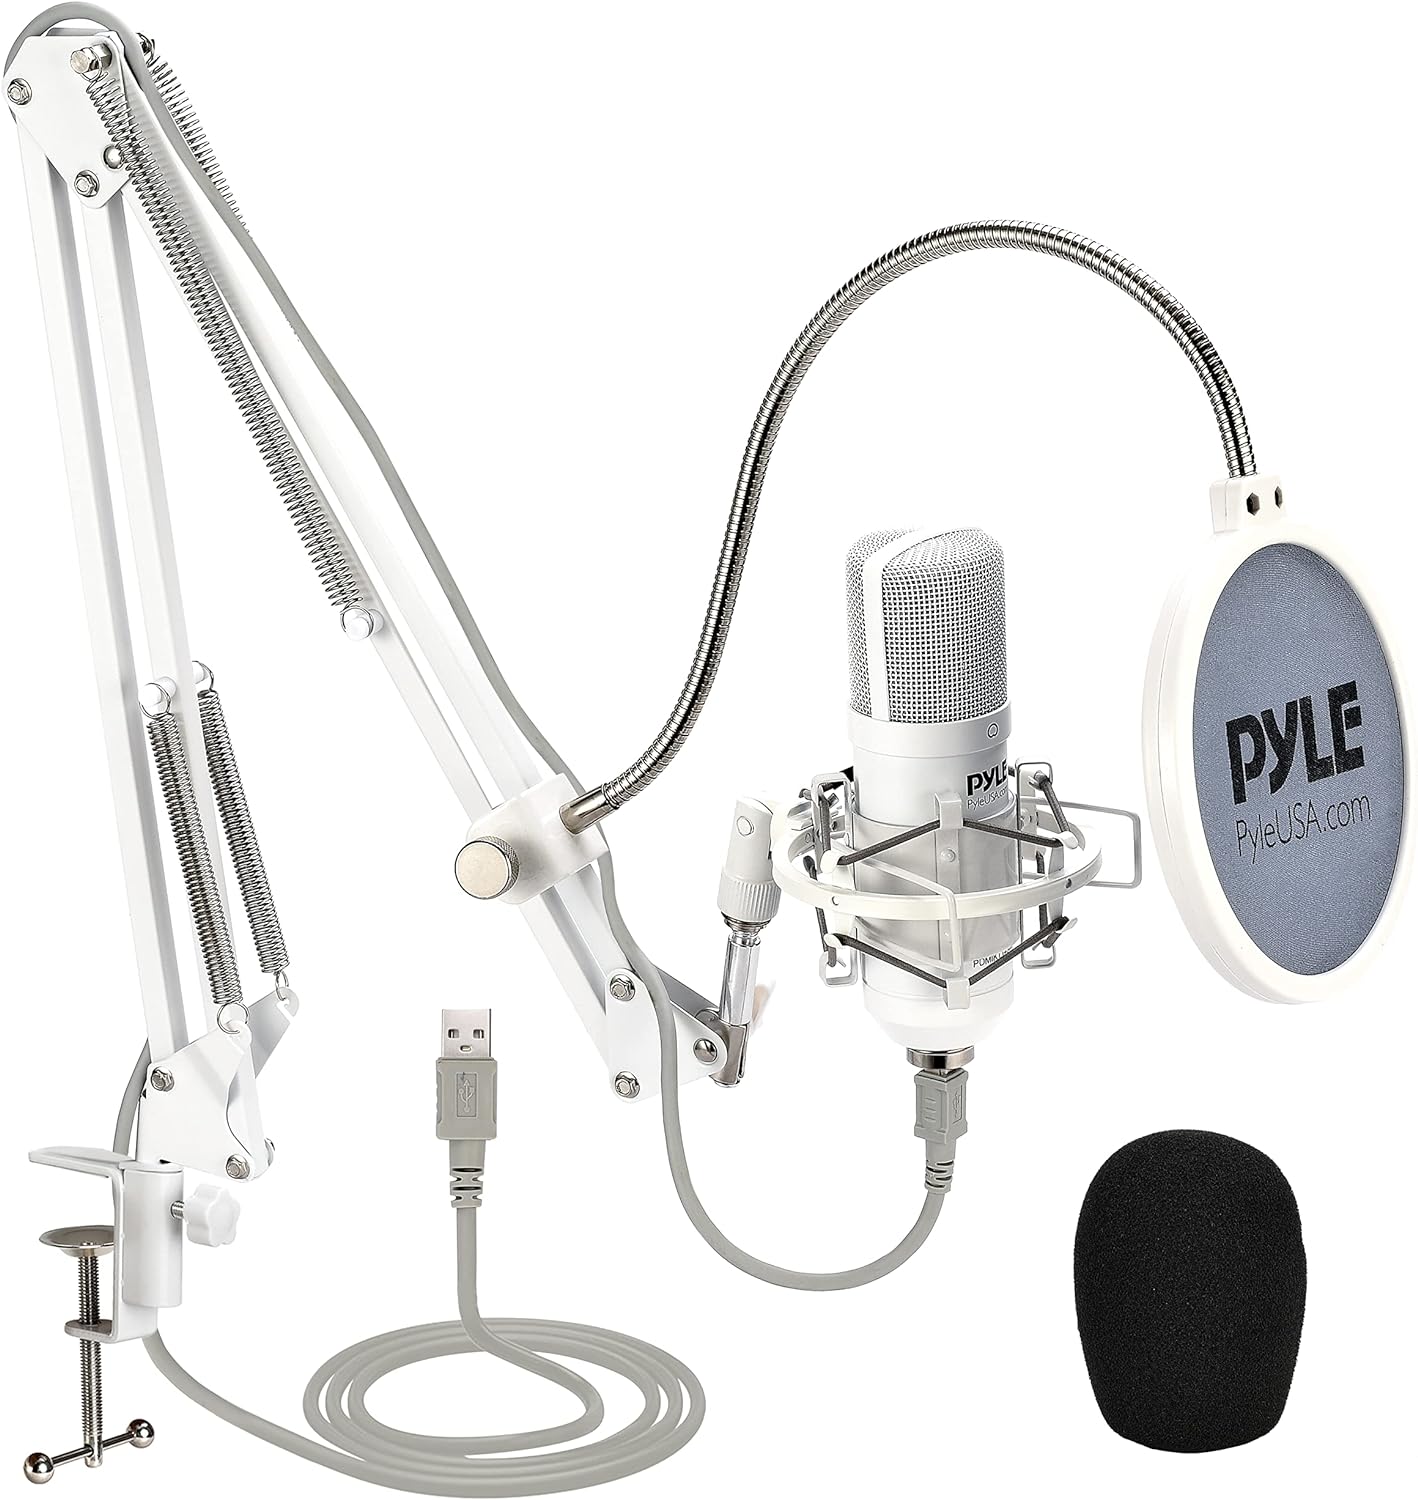 Pyle Kit de micrófono USB, micrófono de condensador cardioide con soporte  de escritorio, ideal para juegos, transmisión, podcasting, estudio,  